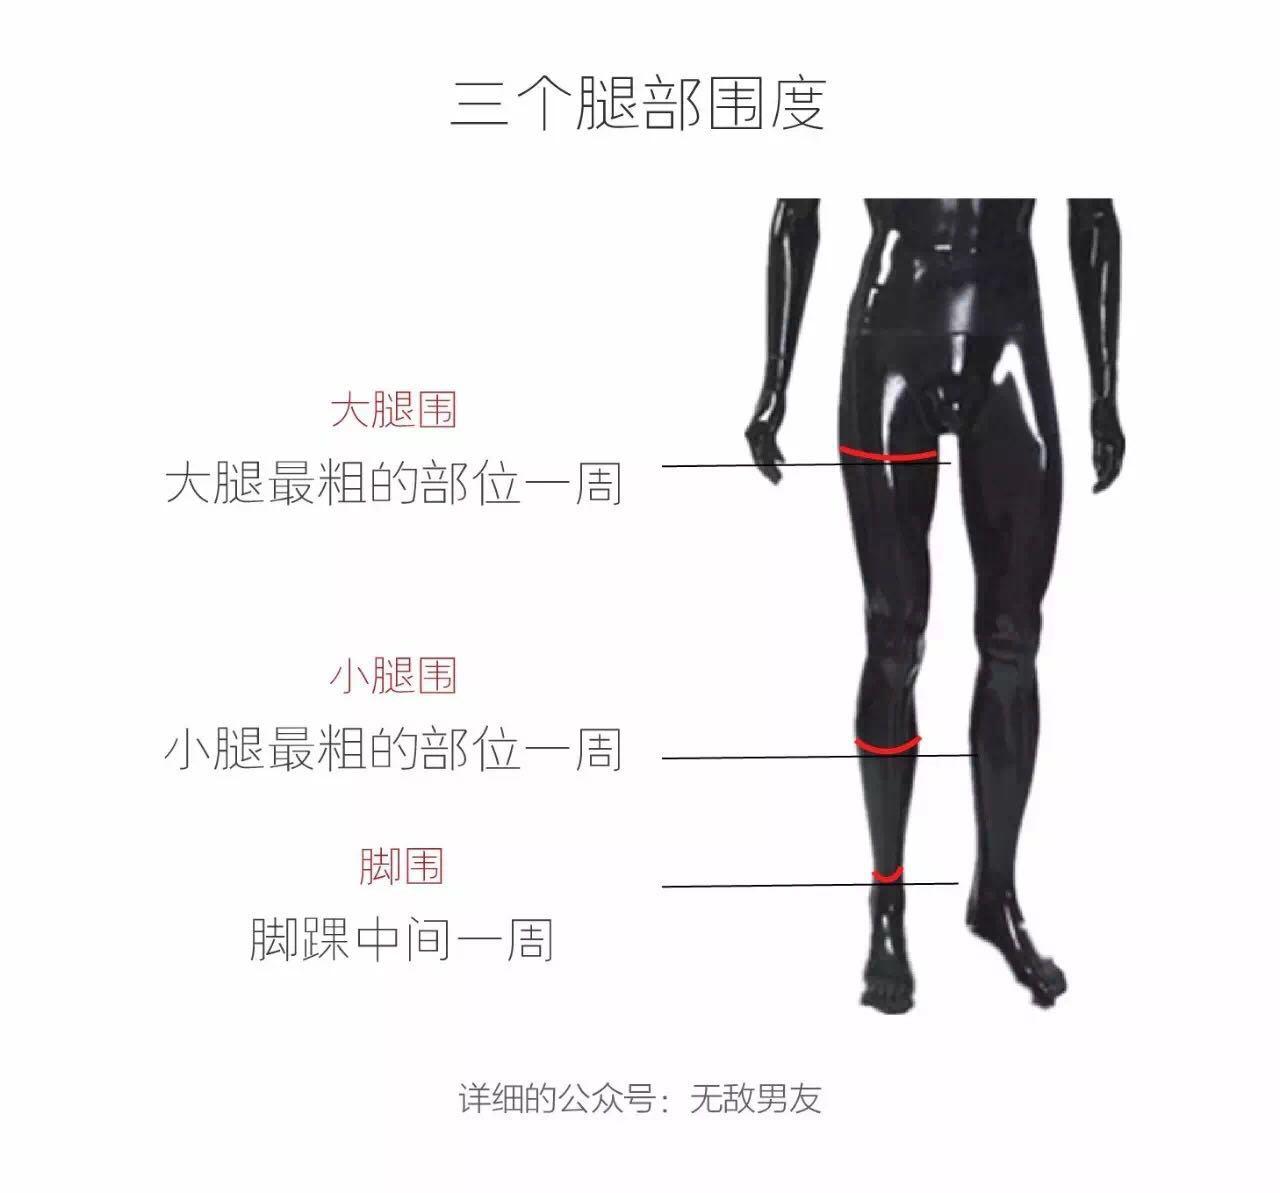 【腿型分析】教你判断O型腿、X型腿、和XO型腿的区别 - 知乎